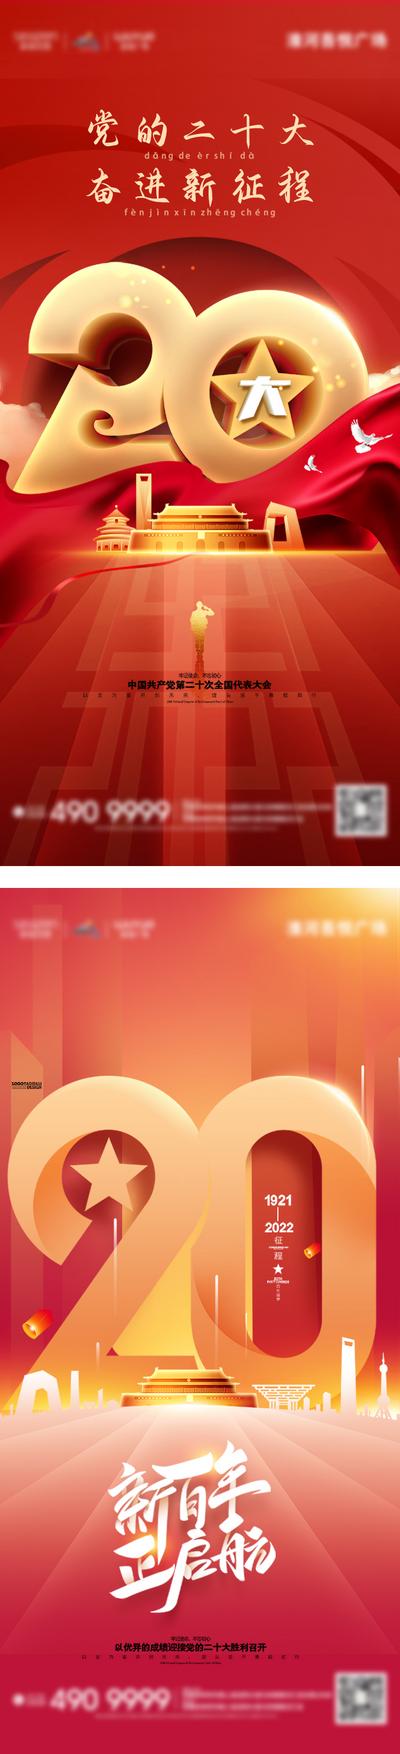 南门网 广告 海报 会议 二十大 党建 国庆 数字 立体 天安门